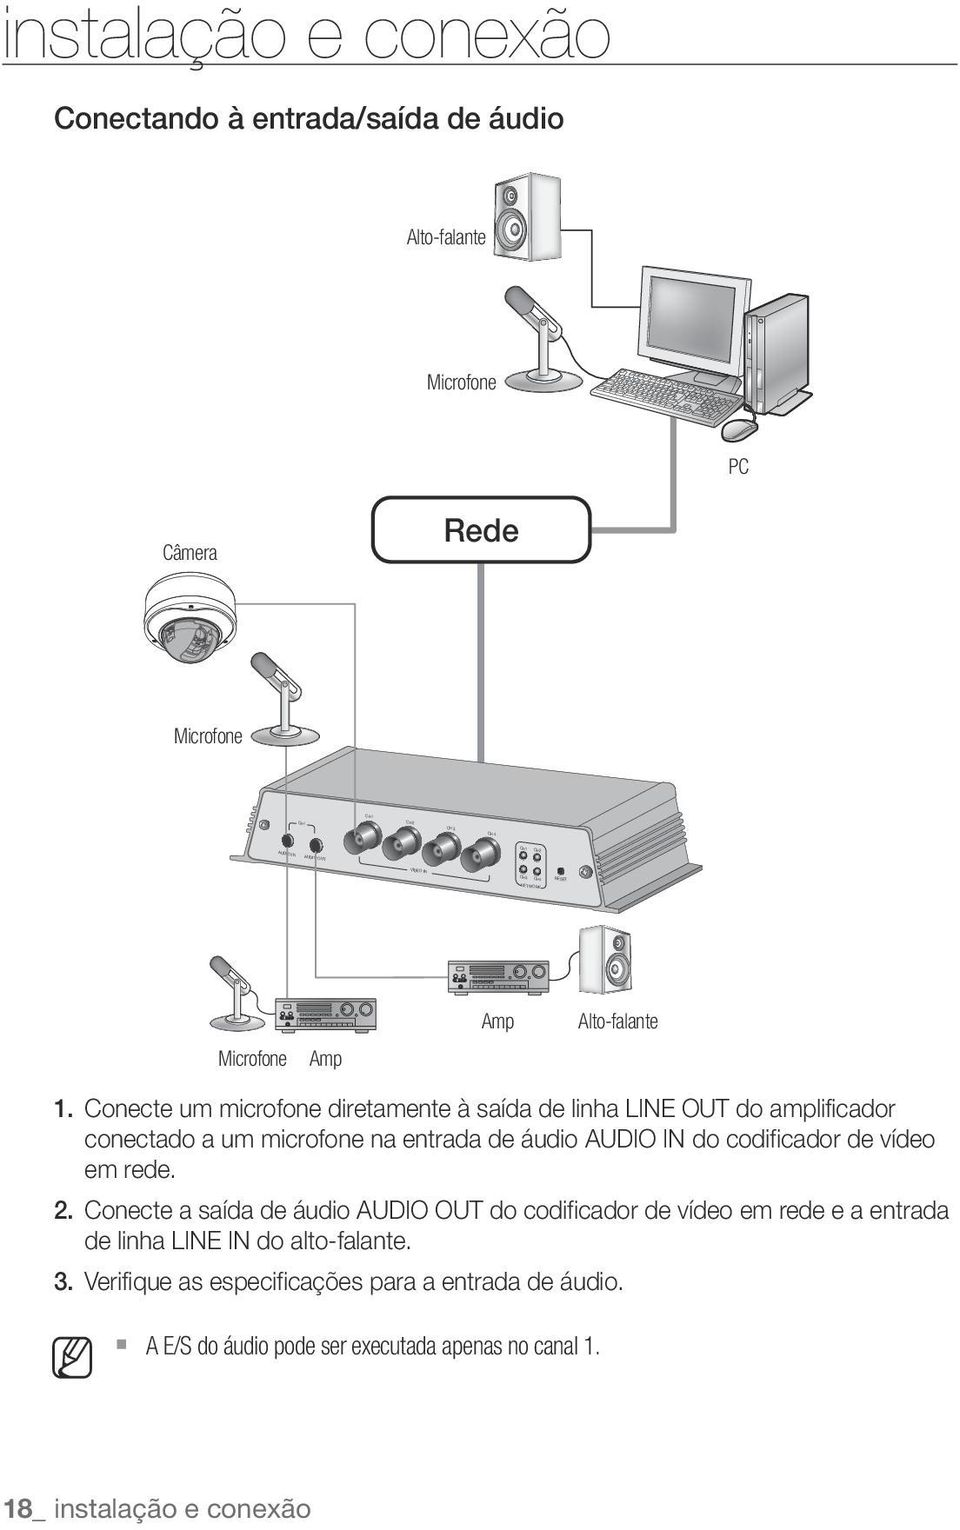 Conecte um microfone diretamente à saída de linha LINE OUT do amplificador conectado a um microfone na entrada de áudio AUDIO IN do codificador de vídeo em